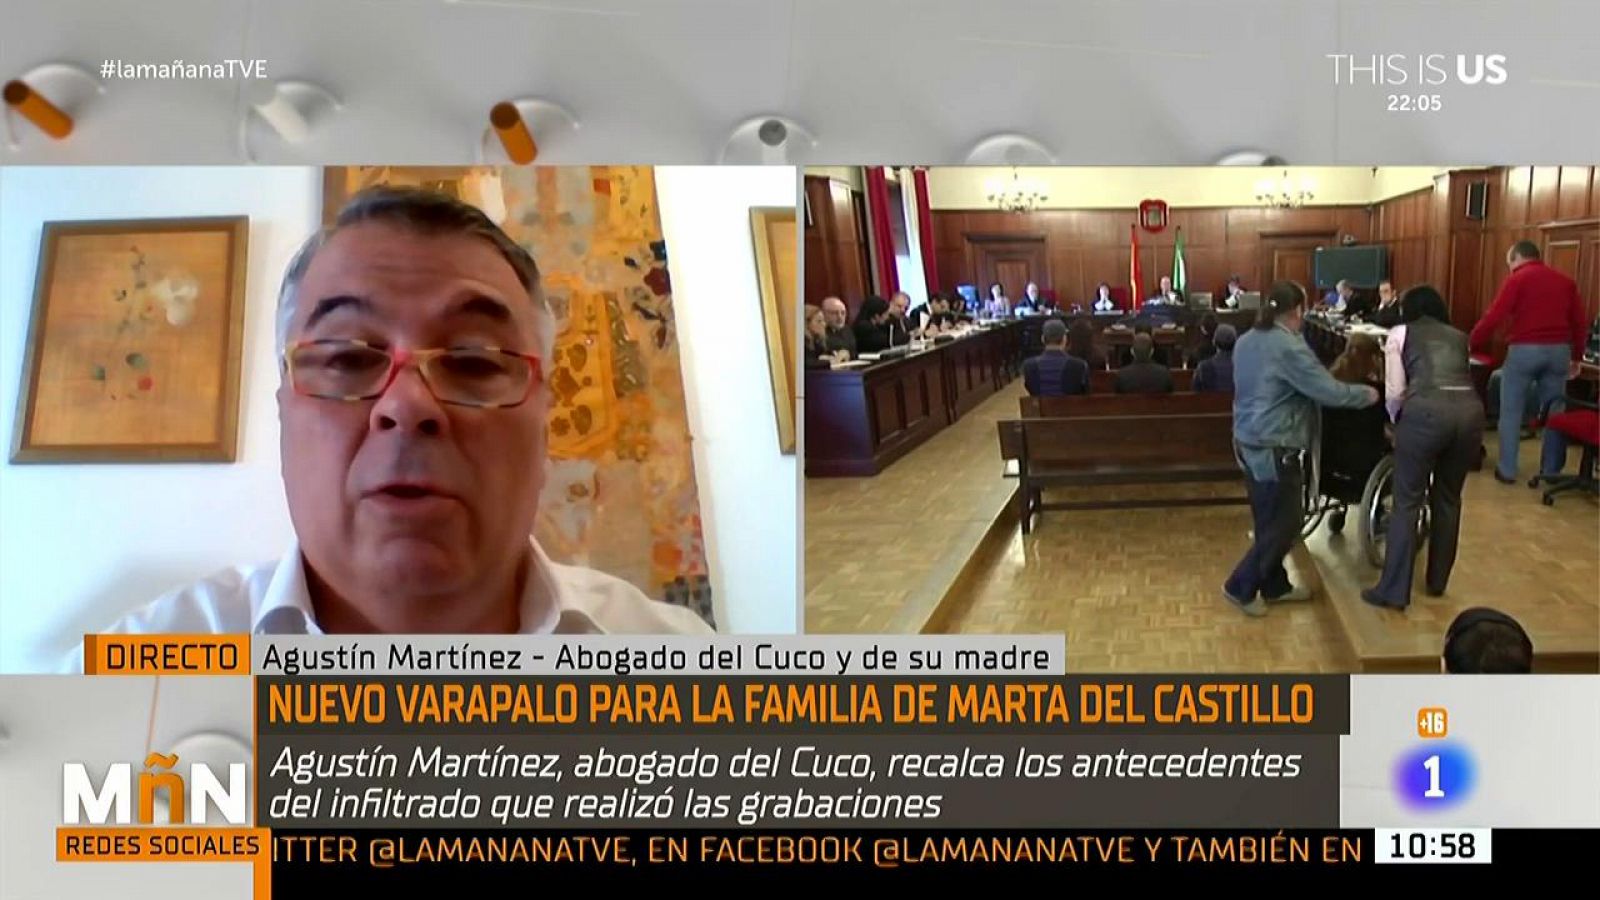 El abogado del Cuco en el caso de Marta del Castillo: "Antonio del Castillo, en un proceso de duelo no superado, trata de abrir todos los procesos posibles"